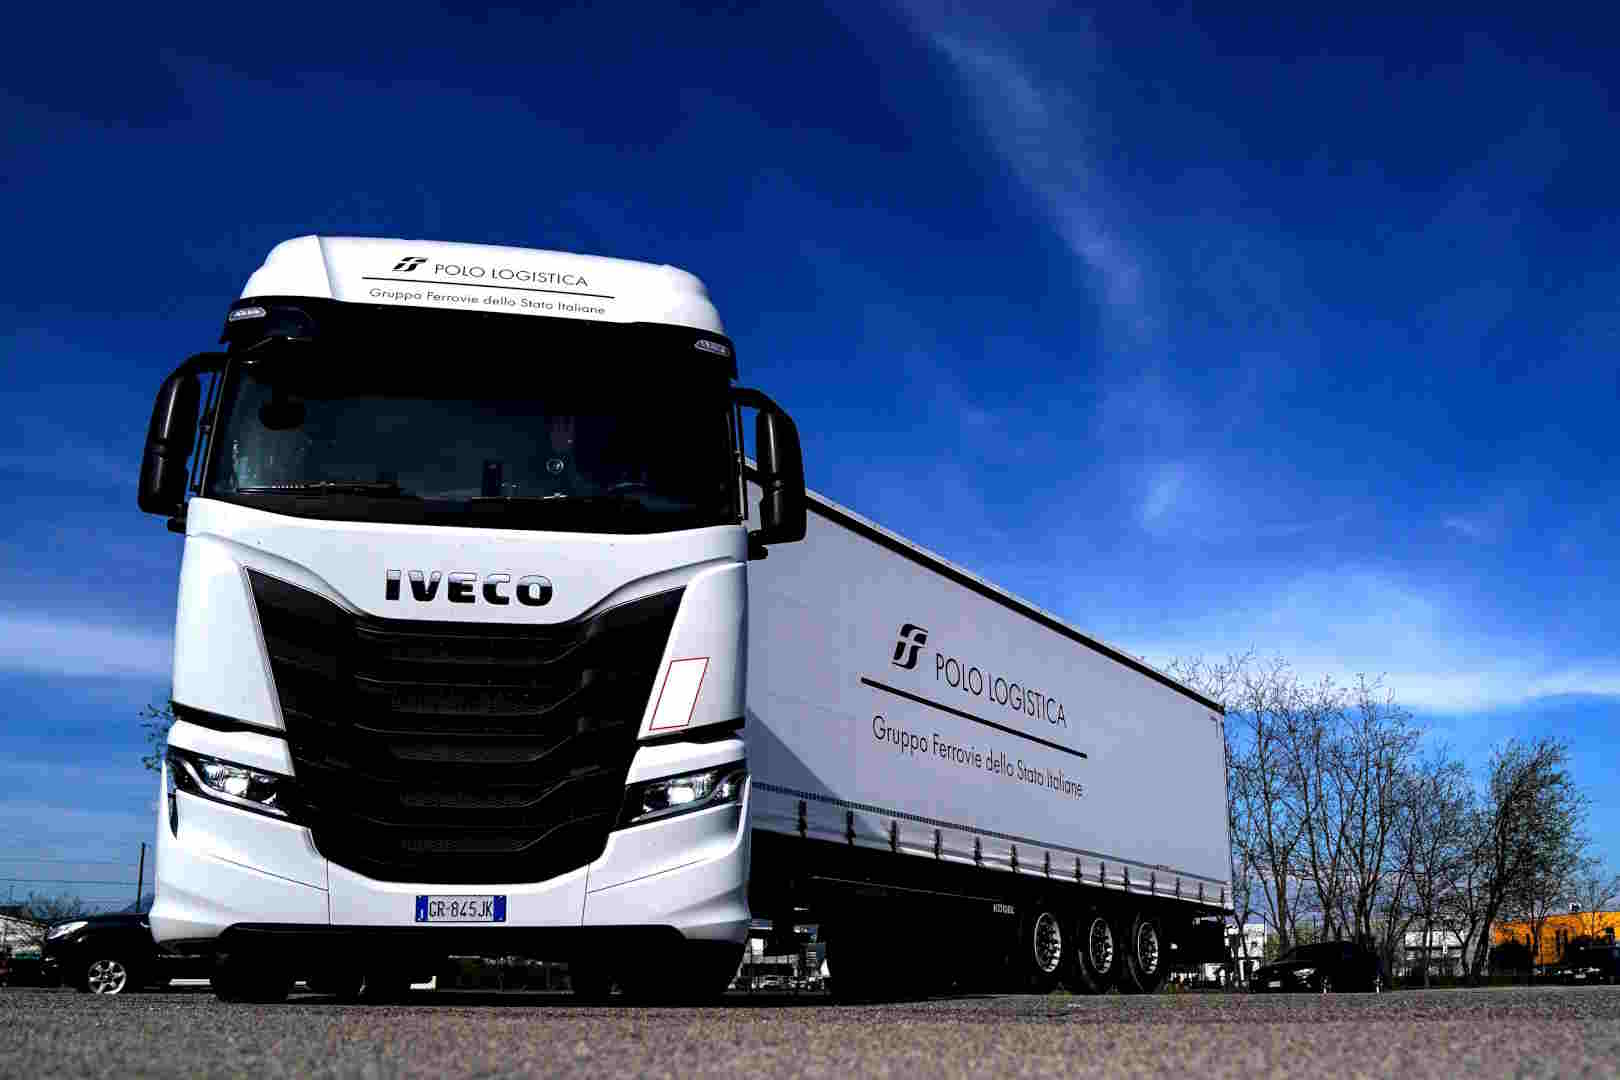 Intermodalità: nuovi camion green nel Polo Logistica del Gruppo FS